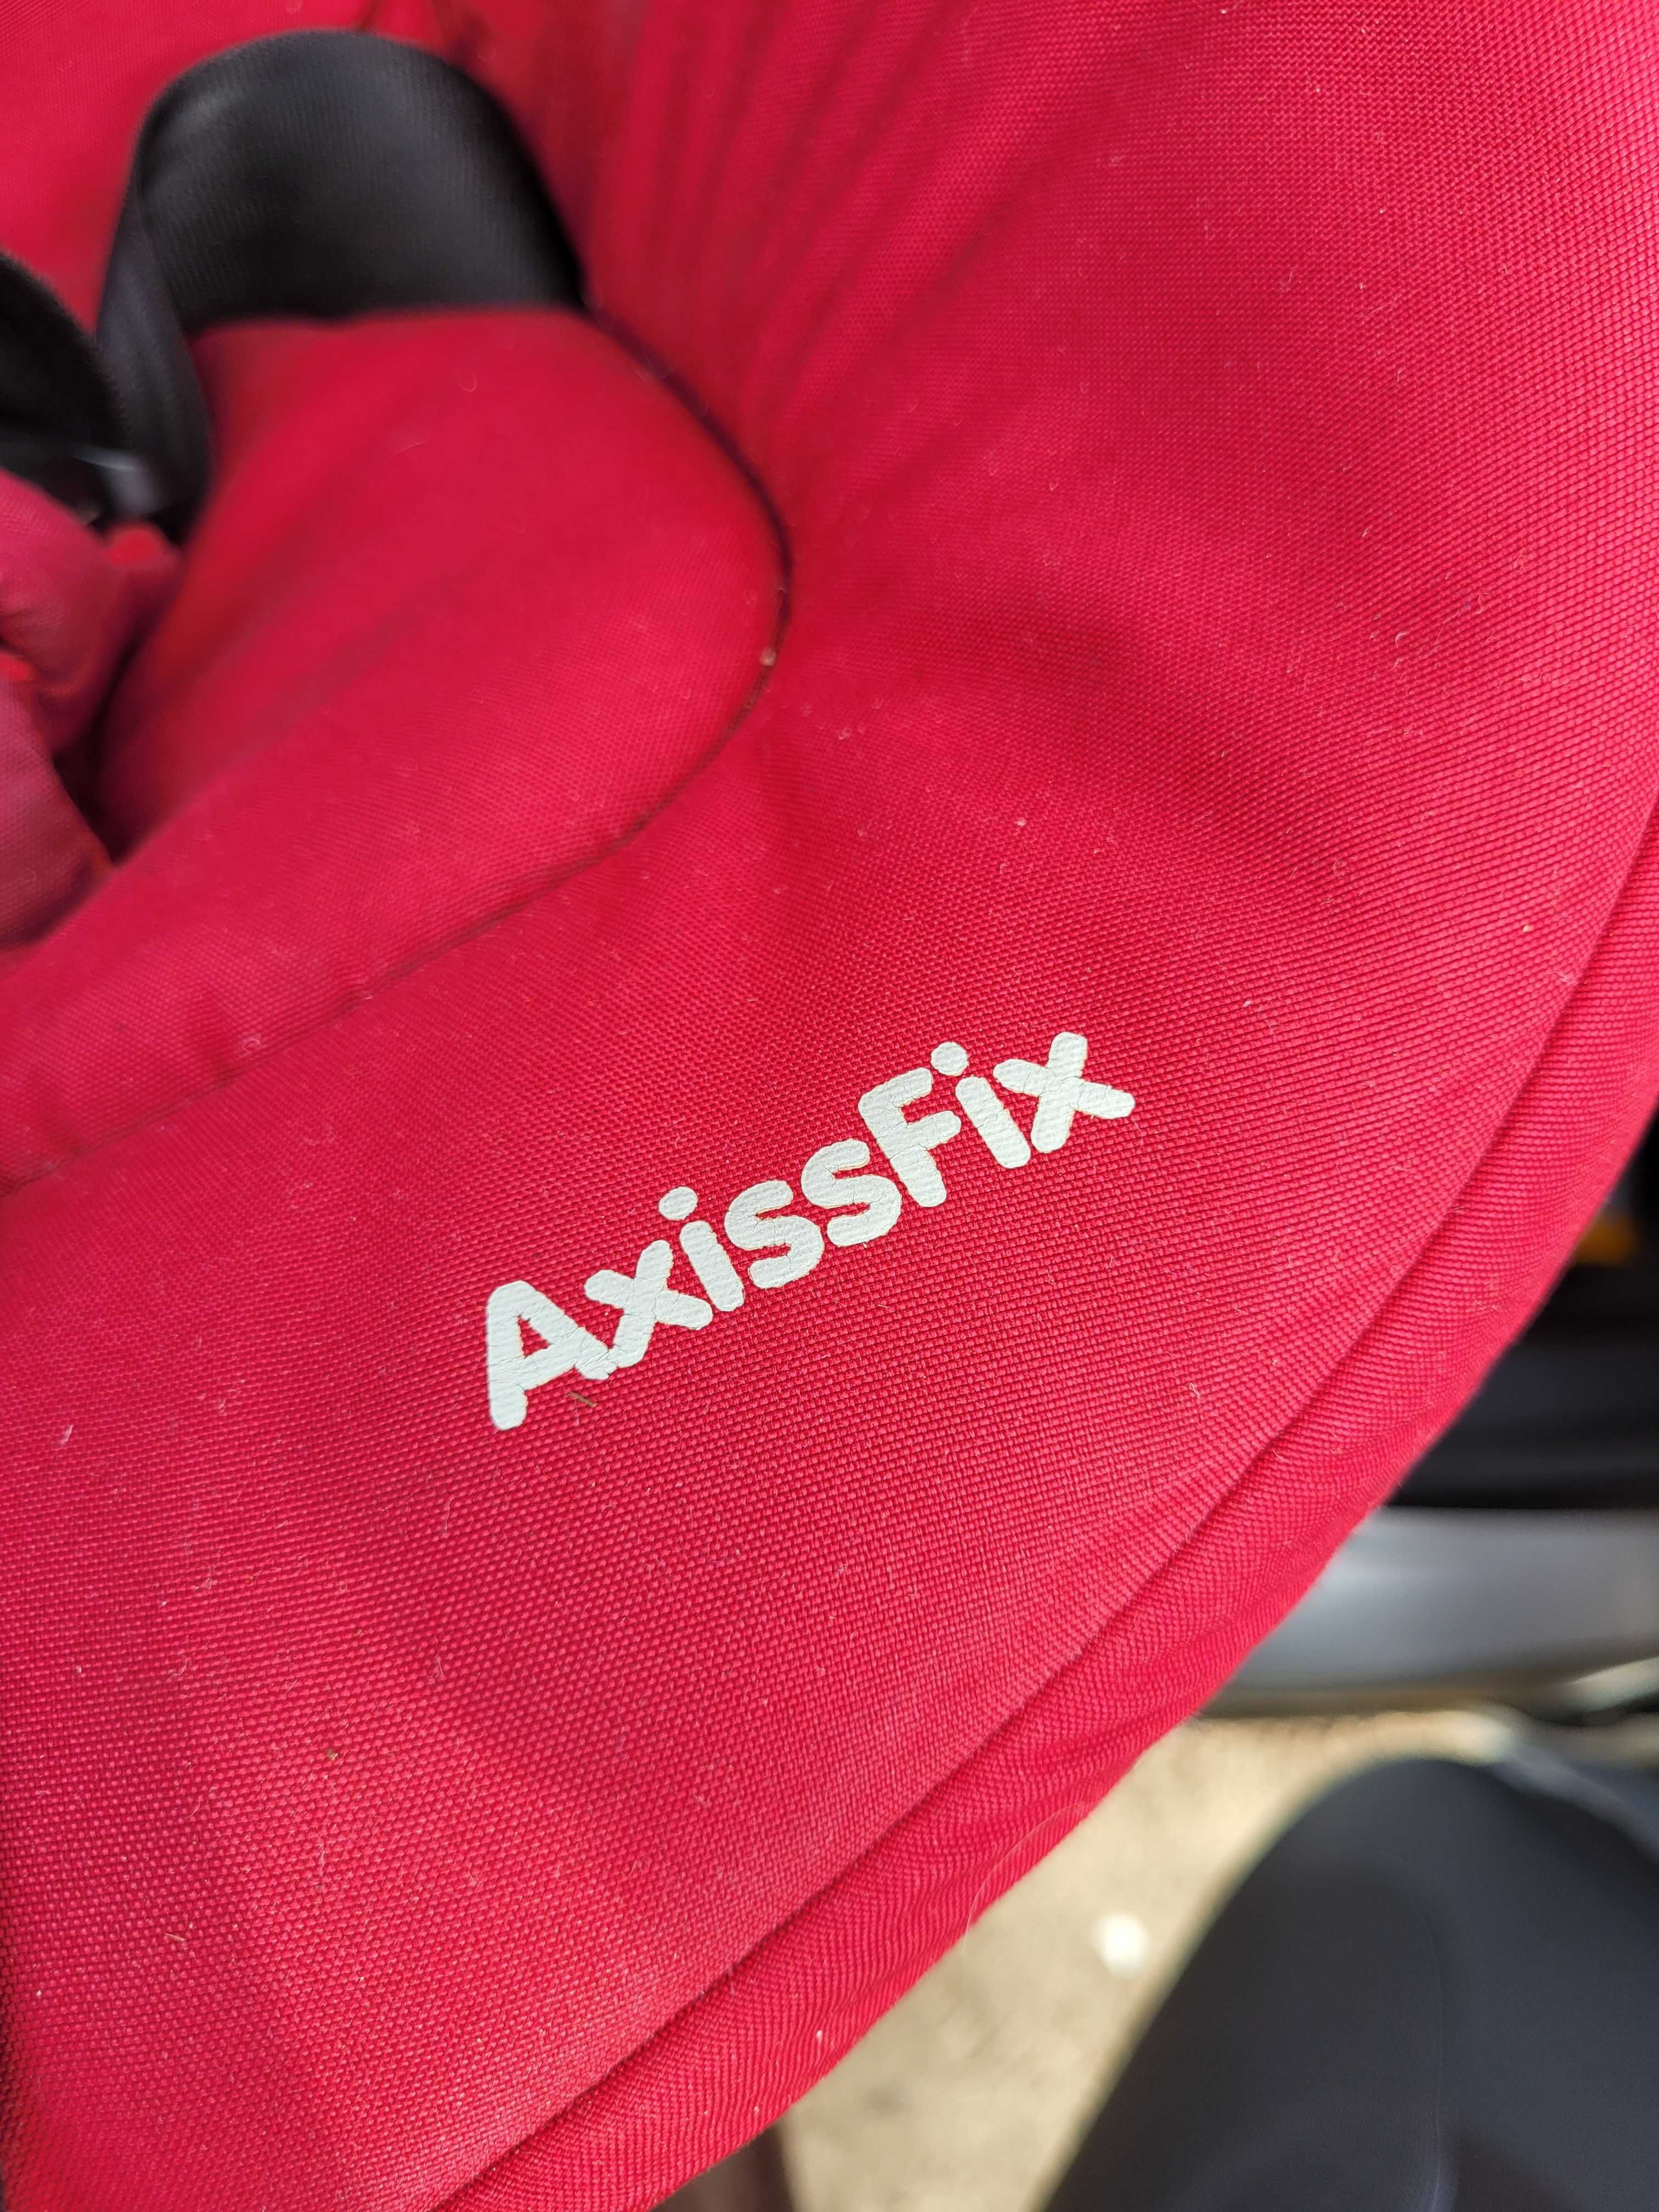 Fotelik Maxi Cosi Axissfix obrotowy Isofix przodem tyłem 19kg czerwony